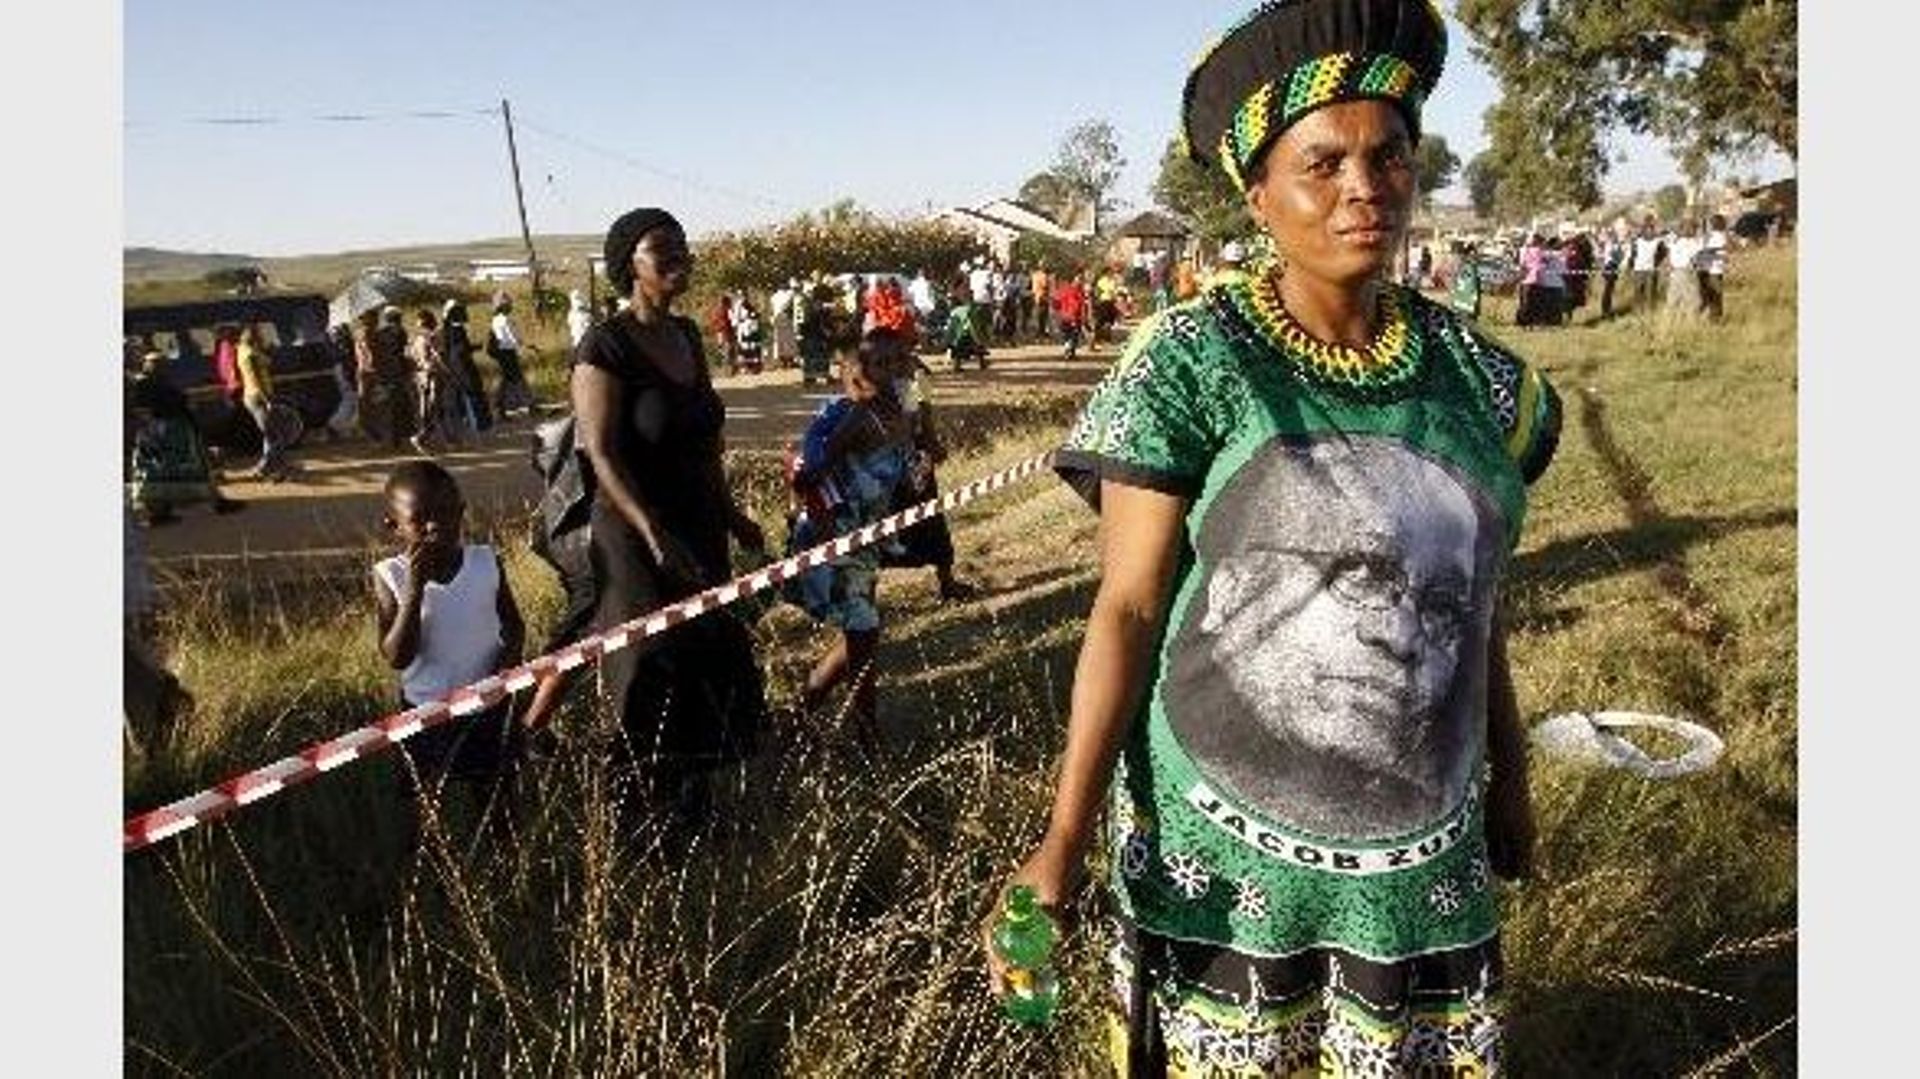 Les Sud-Africains votent, Jacob Zuma grand favori à la présidence